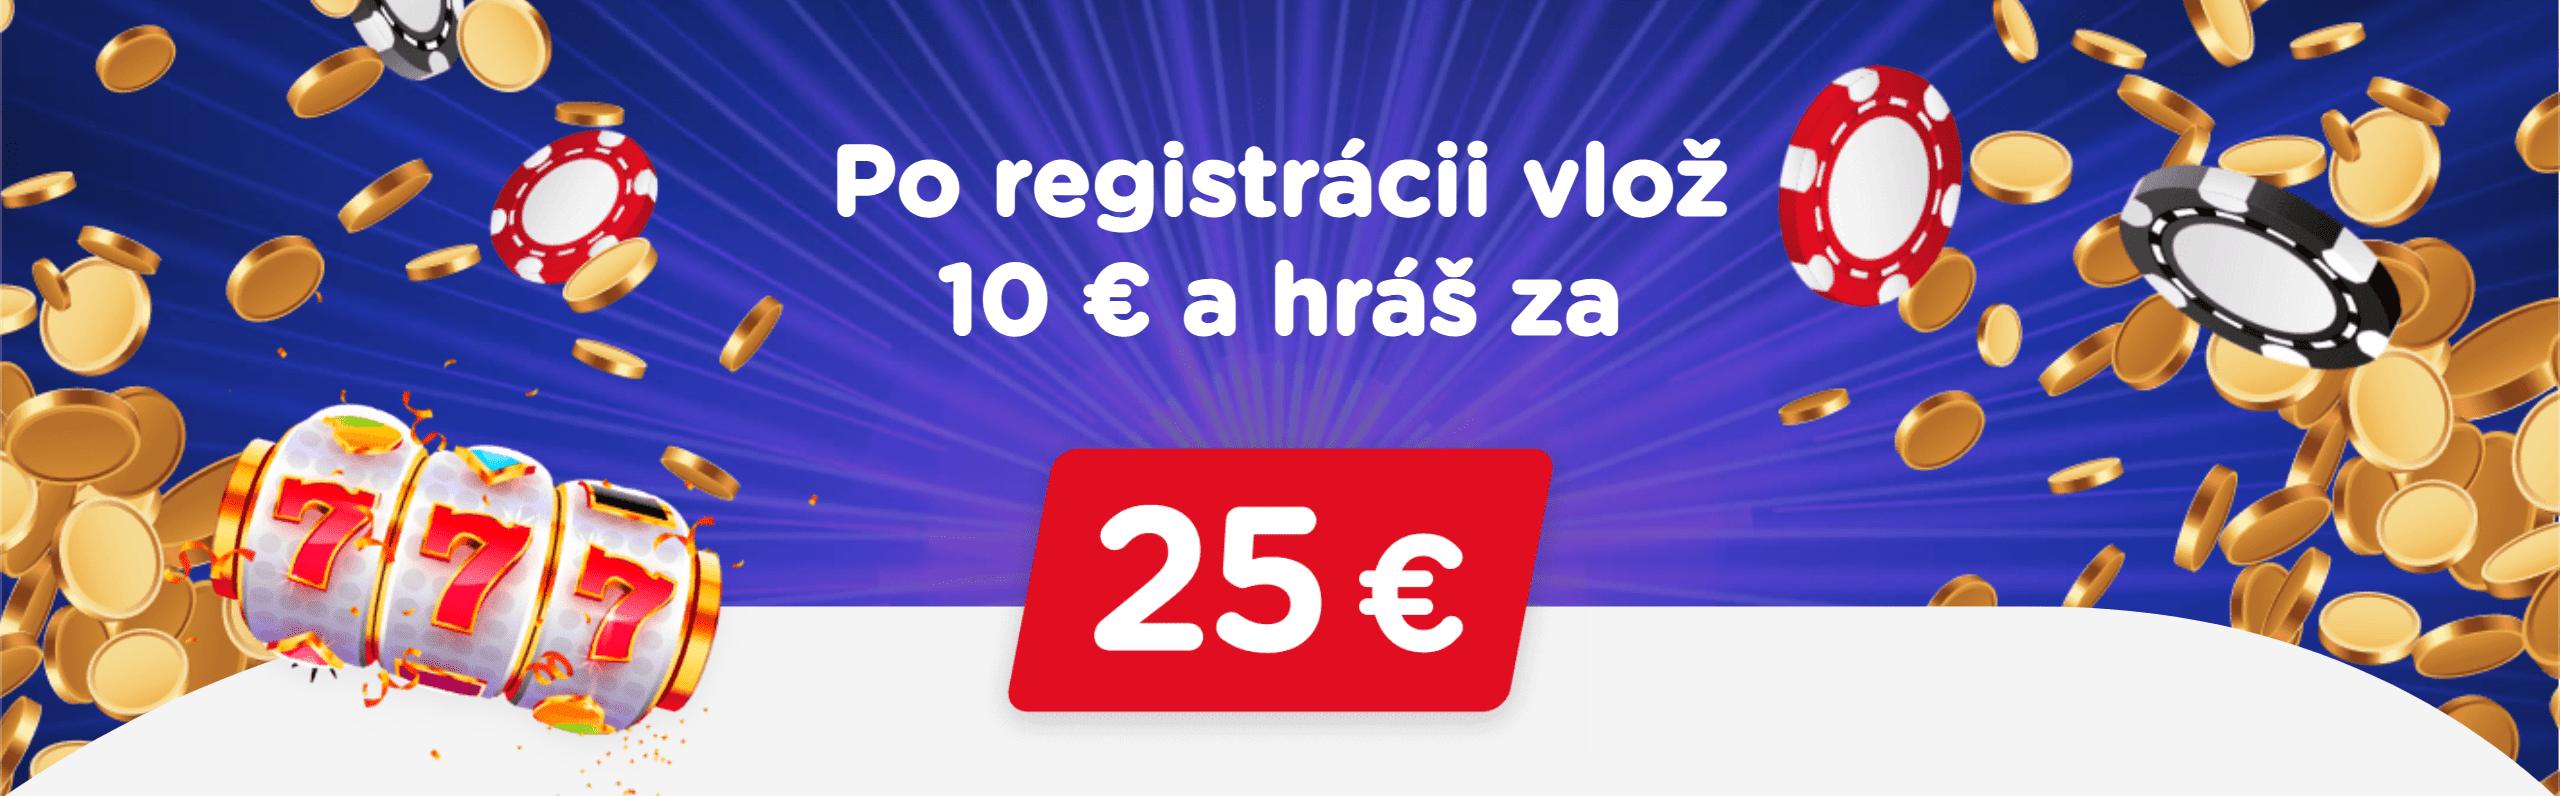 eTIPOS - Setelah pendaftaran, setor 10 Euro dan mainkan seharga 25 Euro - banner